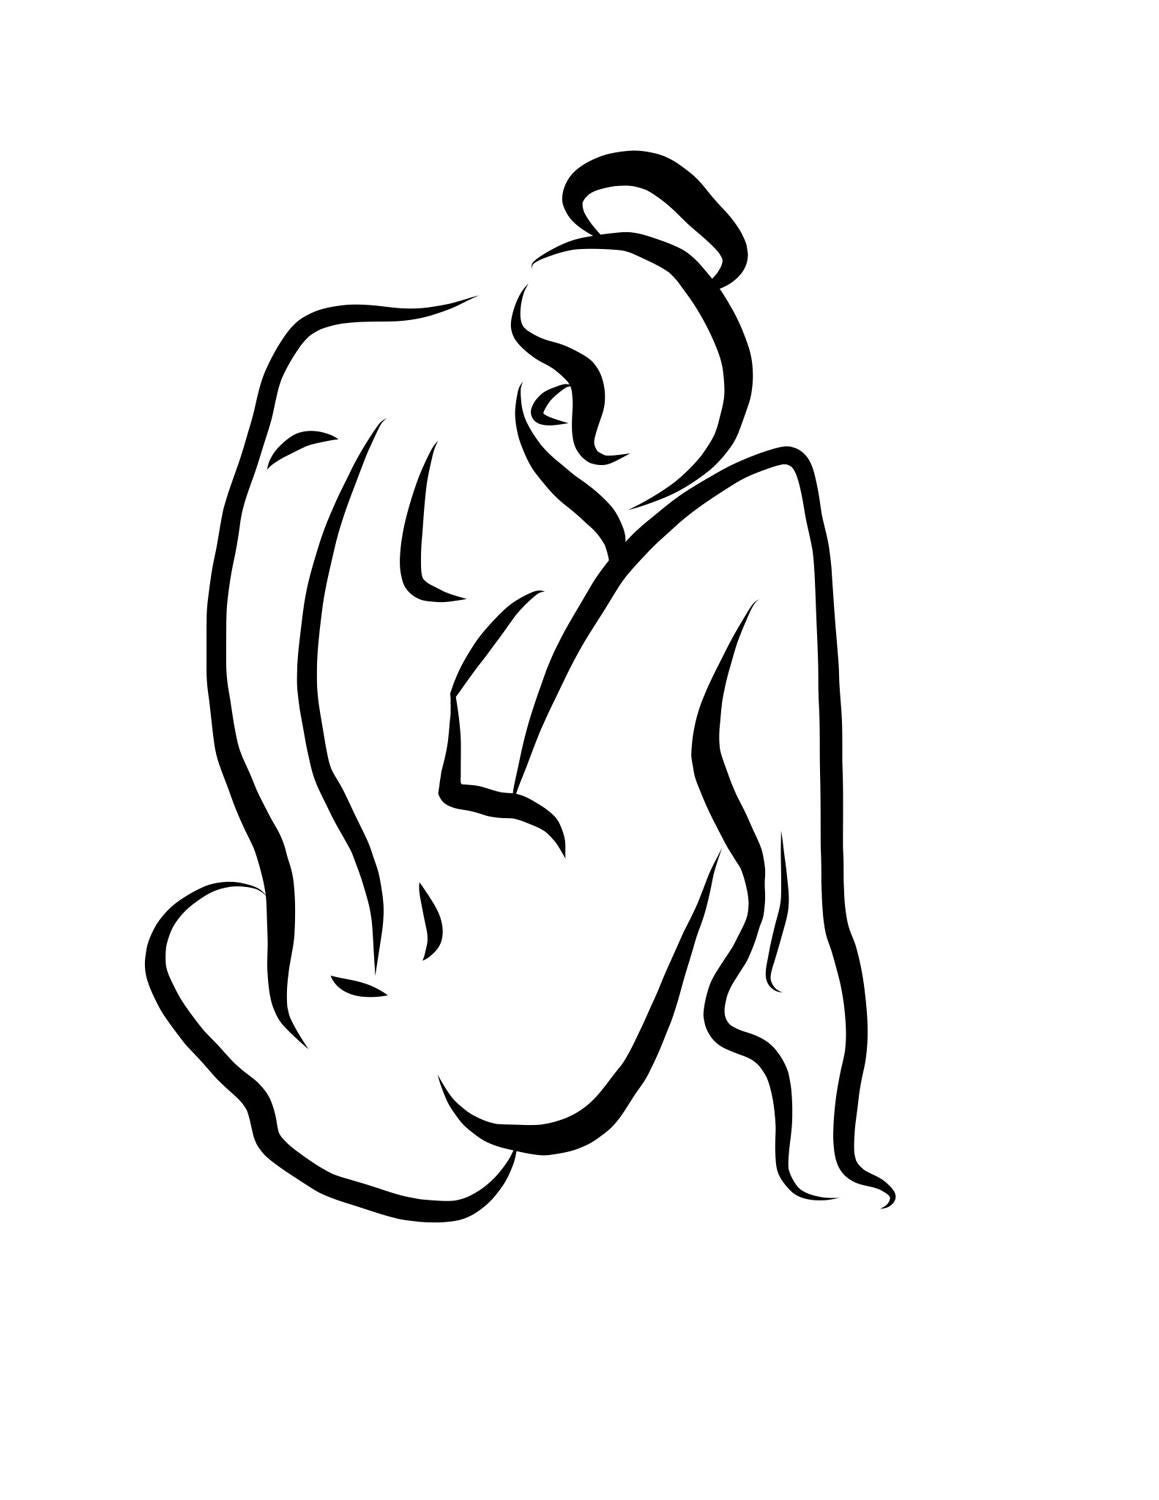 Michael Binkley Nude Print – Haiku #15, 1/50 - Digitale Vektorzeichnung Sitzende weibliche nackte Frau Figur hinter